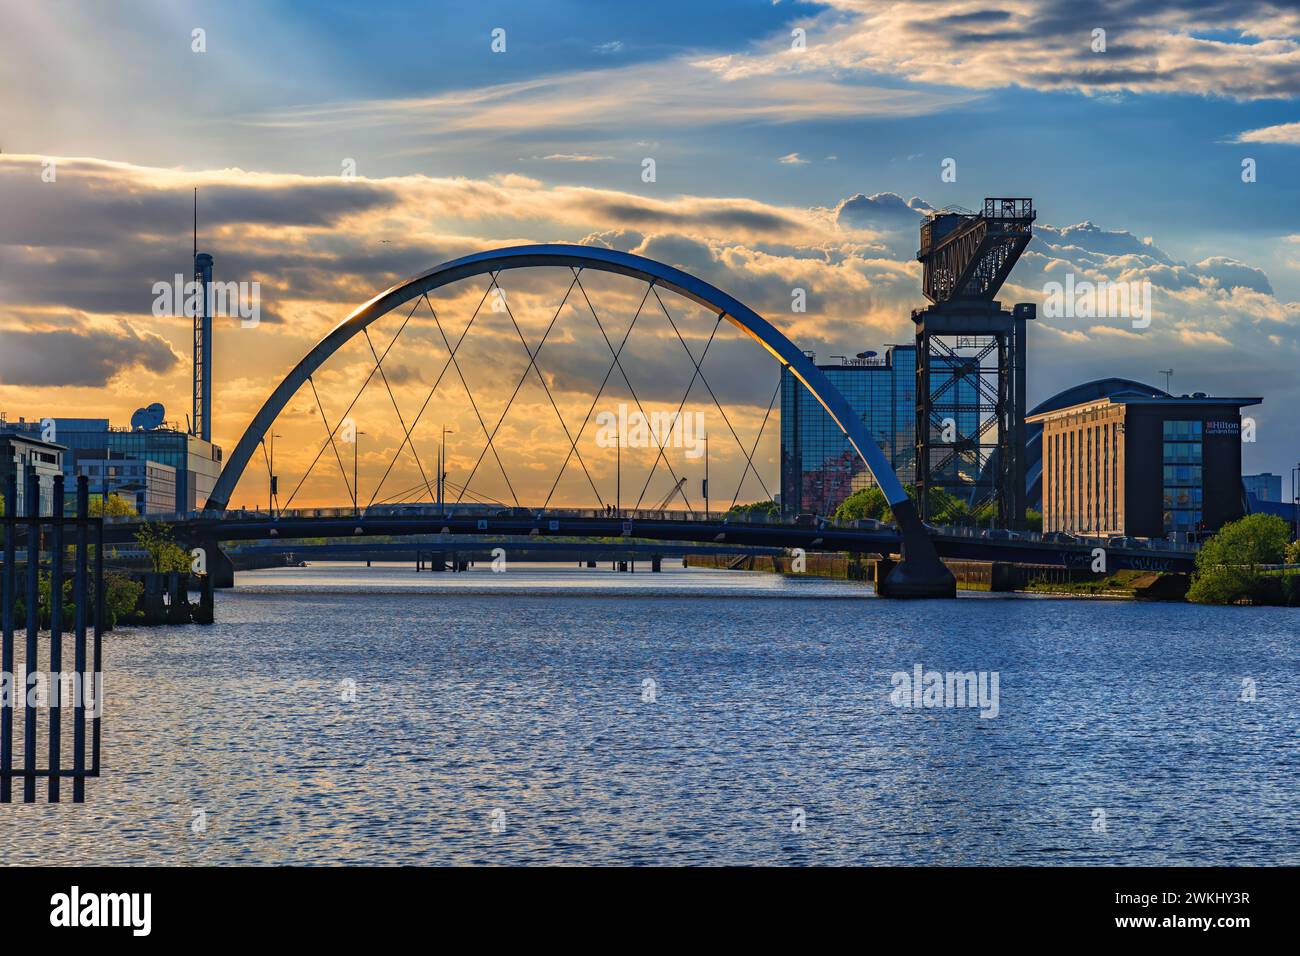 Sonnenuntergang an der Clyde Arc Bridge und Finnieston Crane am Fluss Clyde in Glasgow in Schottland, Großbritannien. Stockfoto